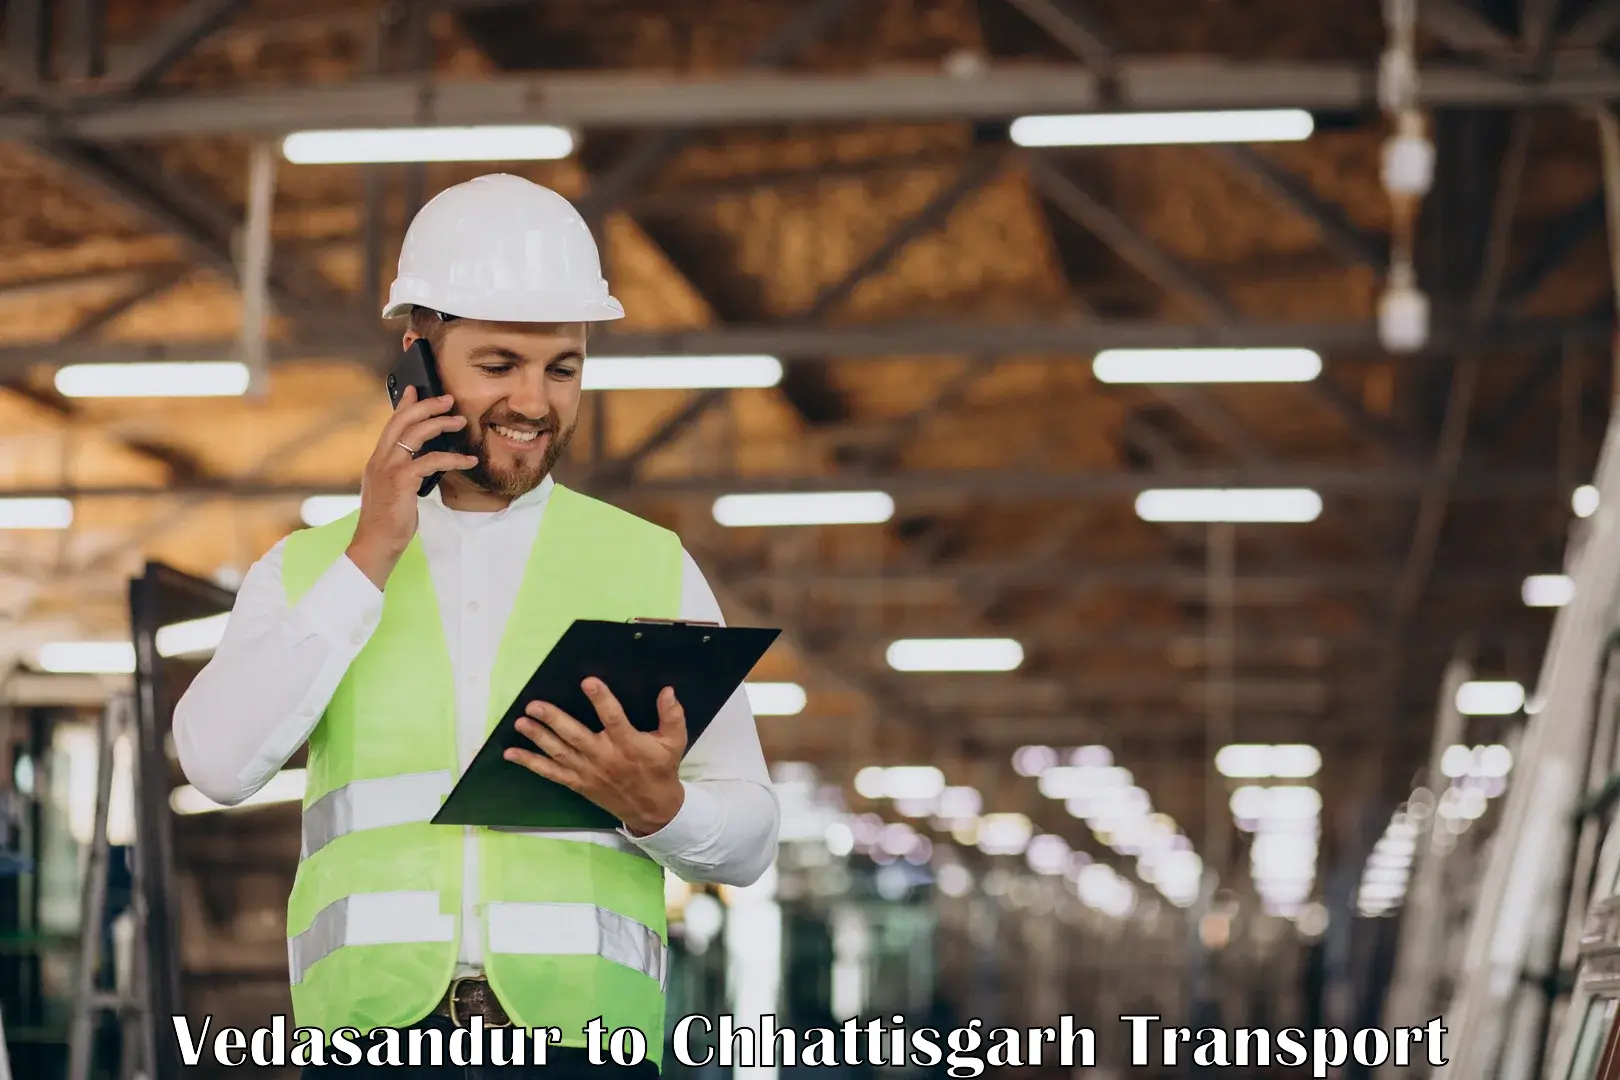 Delivery service Vedasandur to Raigarh Chhattisgarh